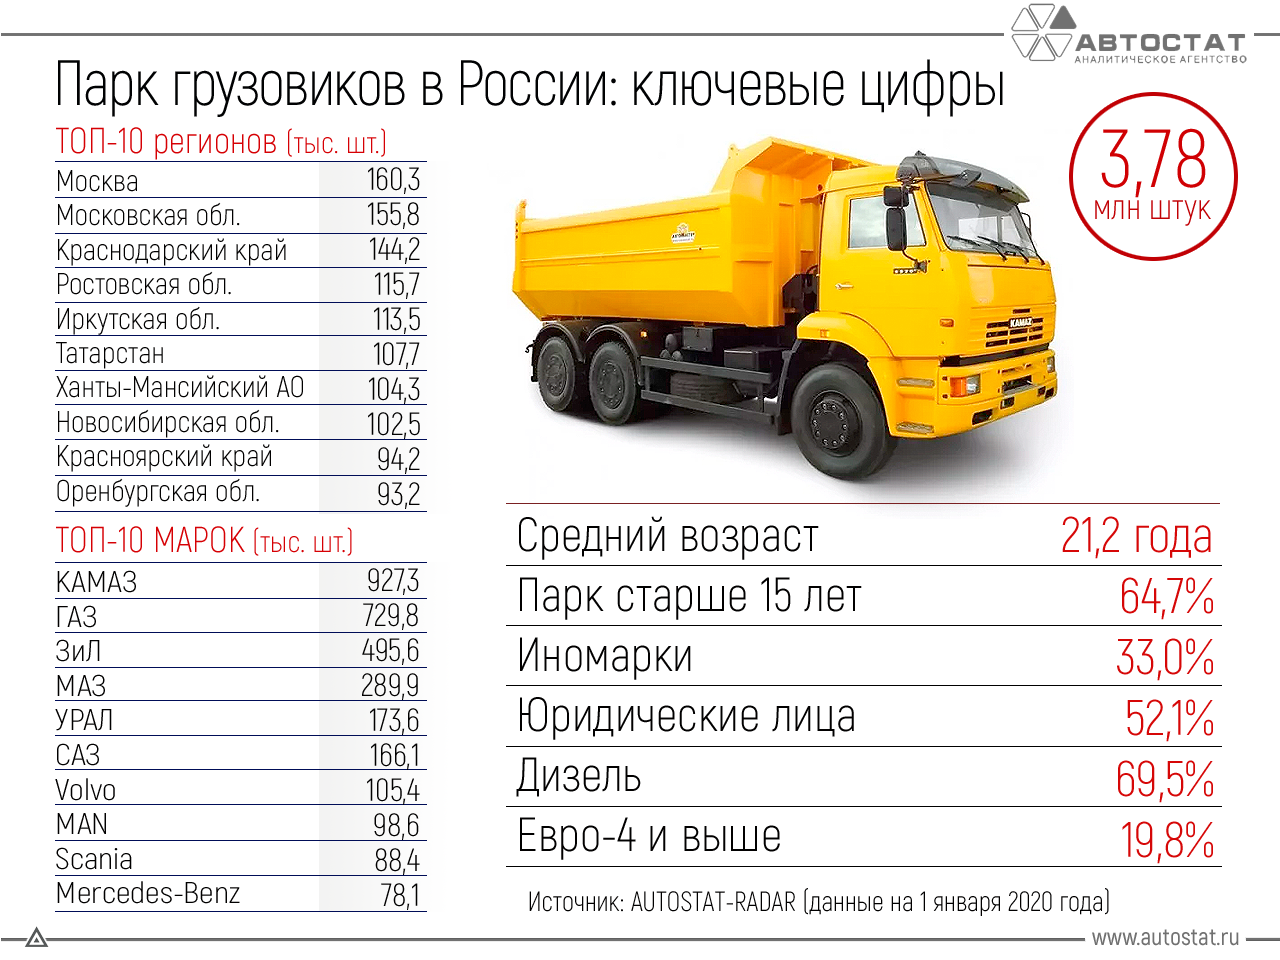 В России на начало 2020 года насчитывалось почти четыре миллиона грузовиков всех типов